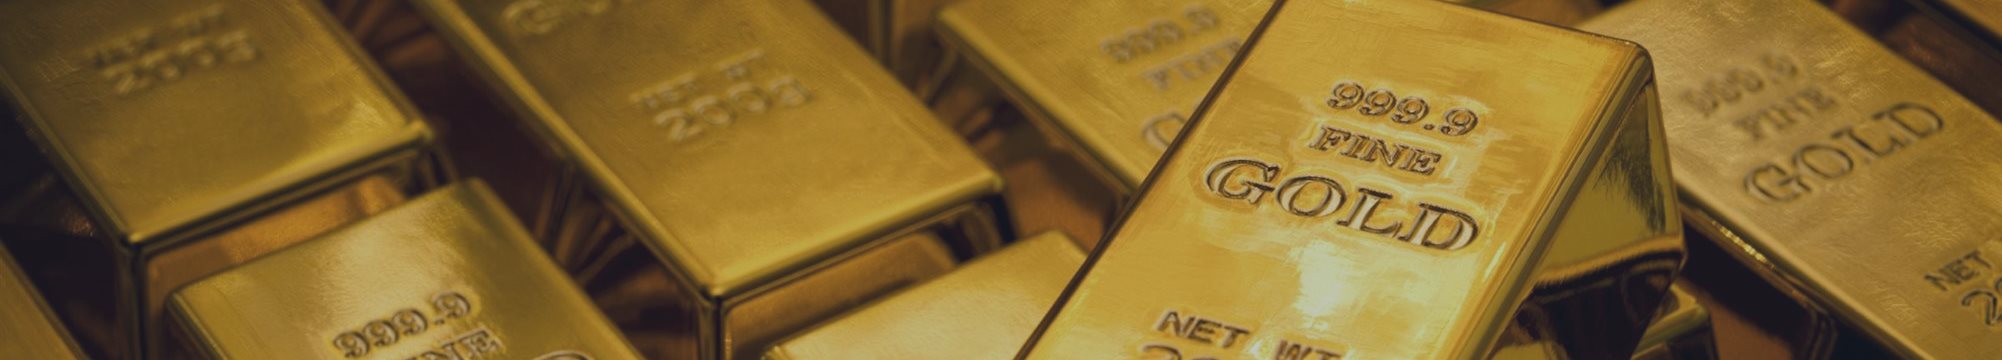 Страны Европы собирают свое золото «в сундуках». Евро в опасности